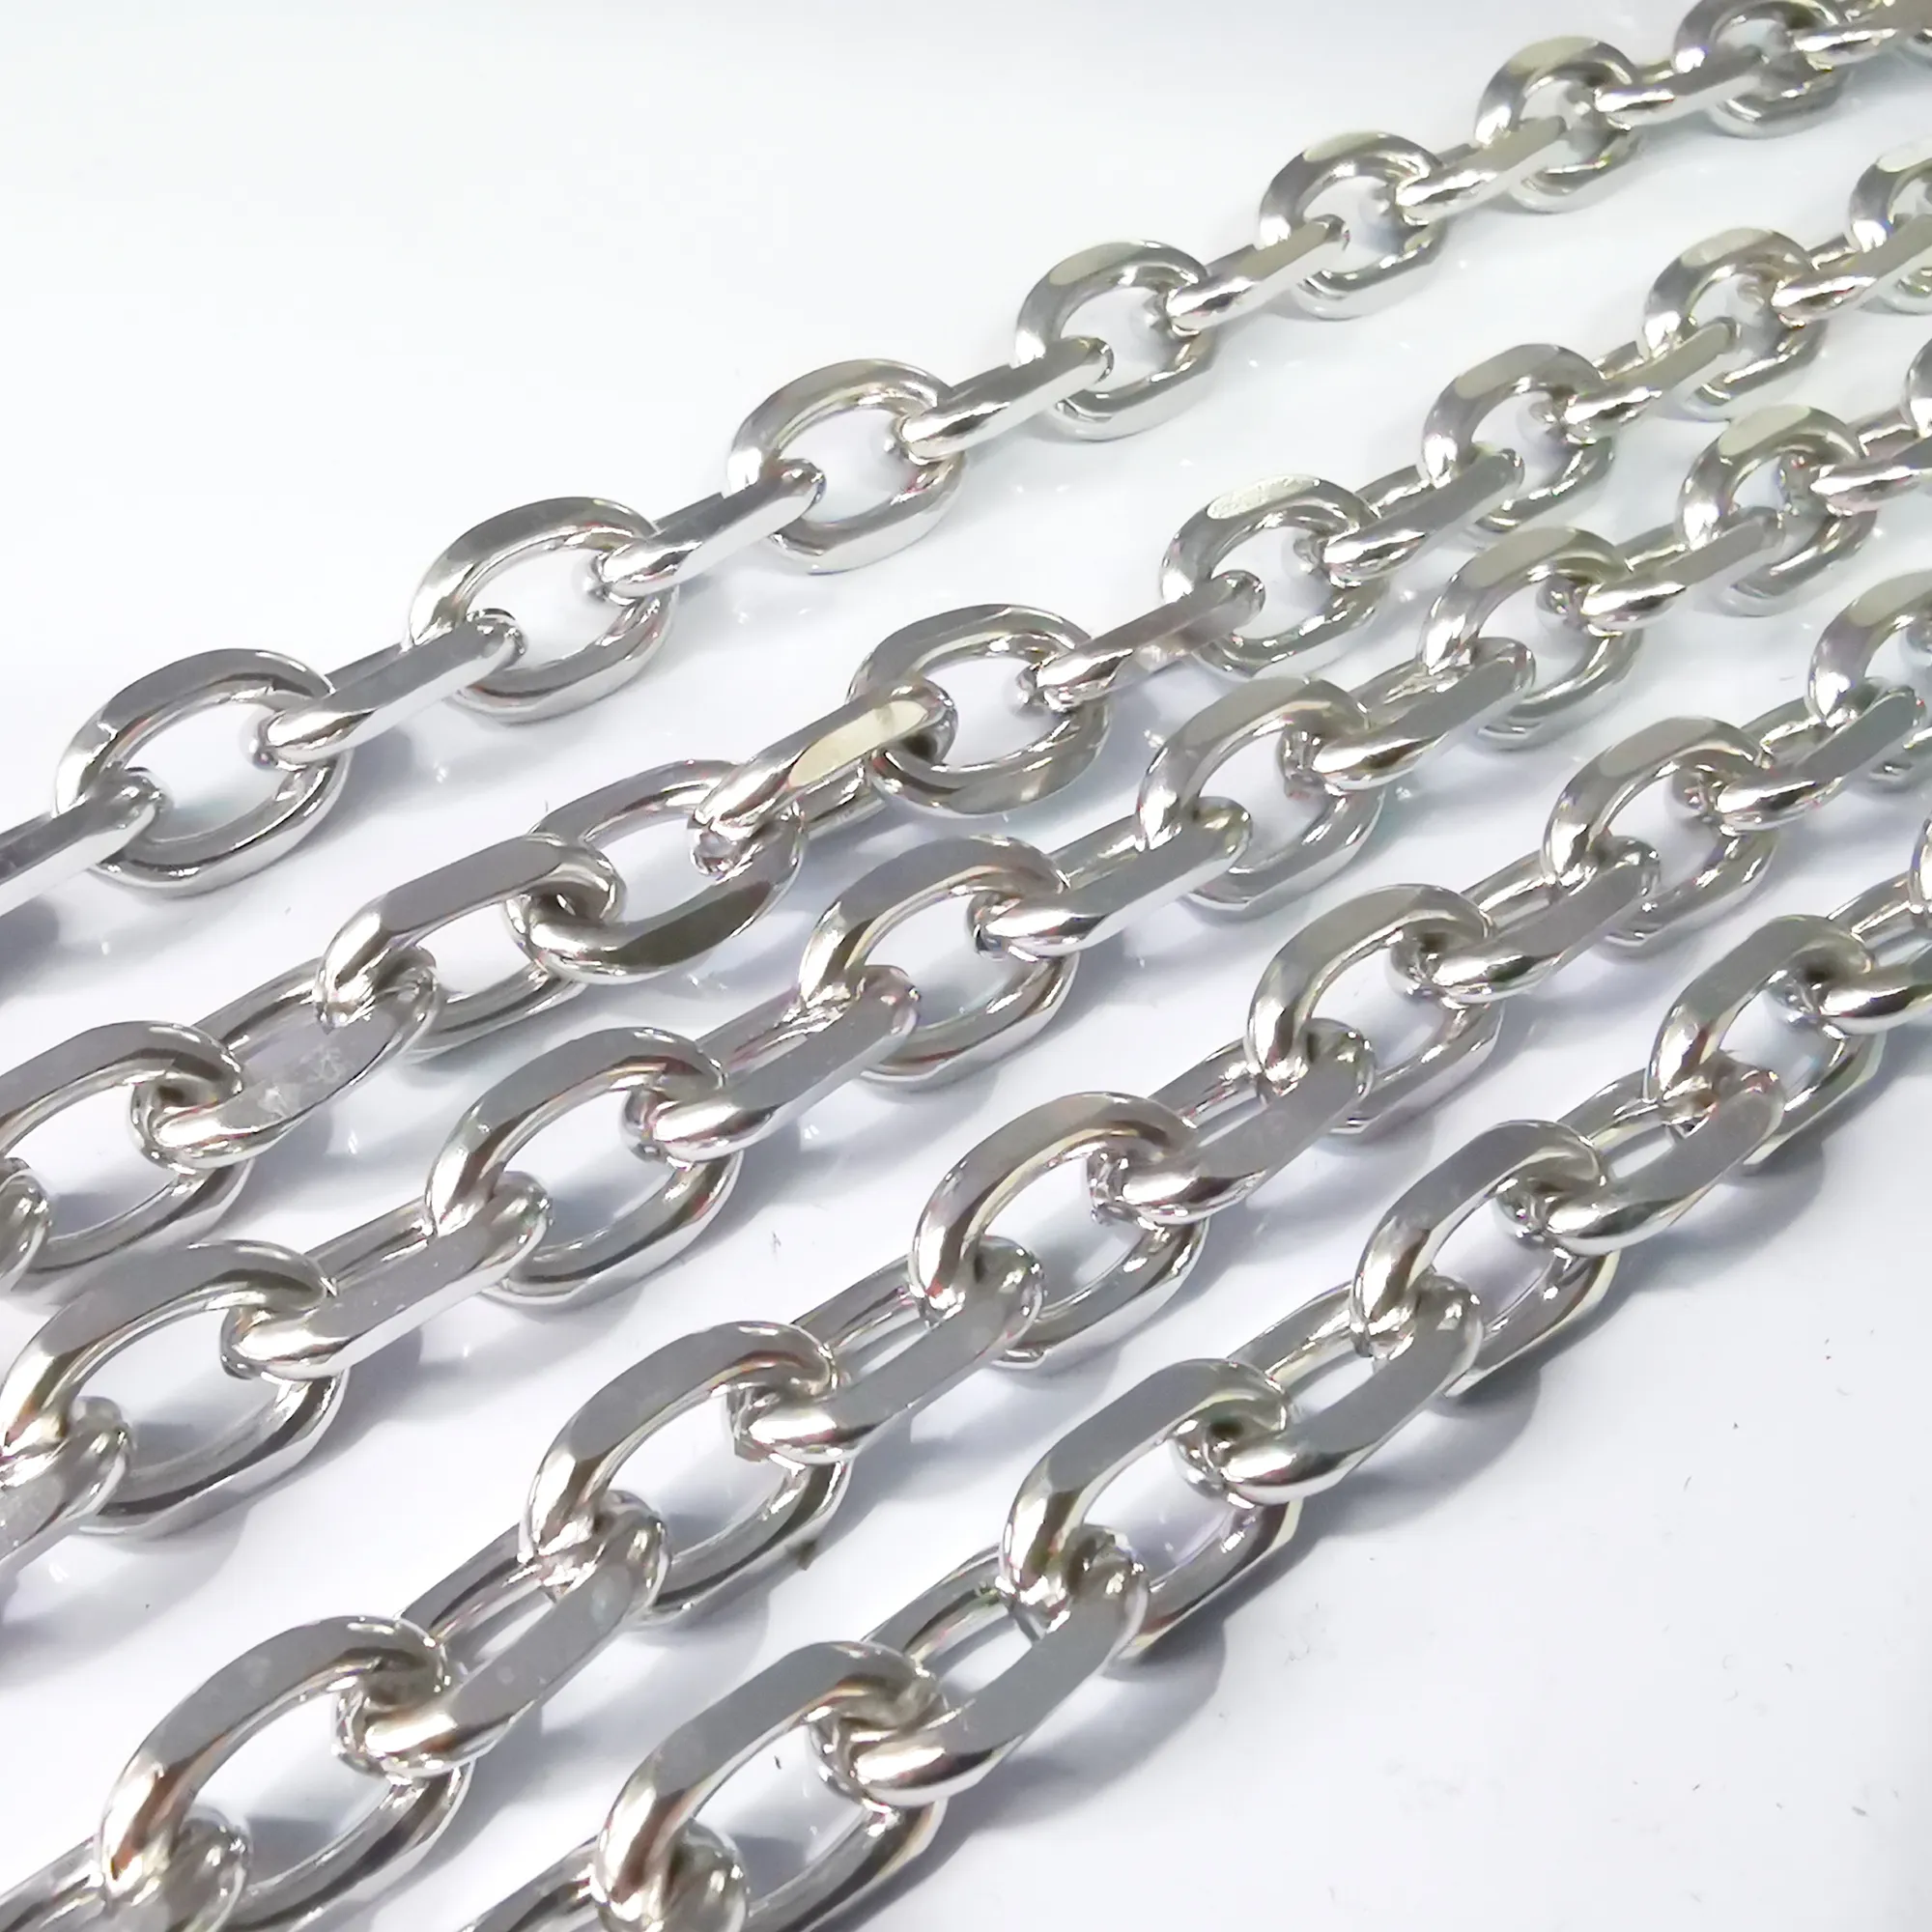 5meter in bulk enorm 9 * 13mm roestvrij staal kruis ovale link ketting sieraden bevindingen sieraden markering zilver DIY ketting armband voor heren